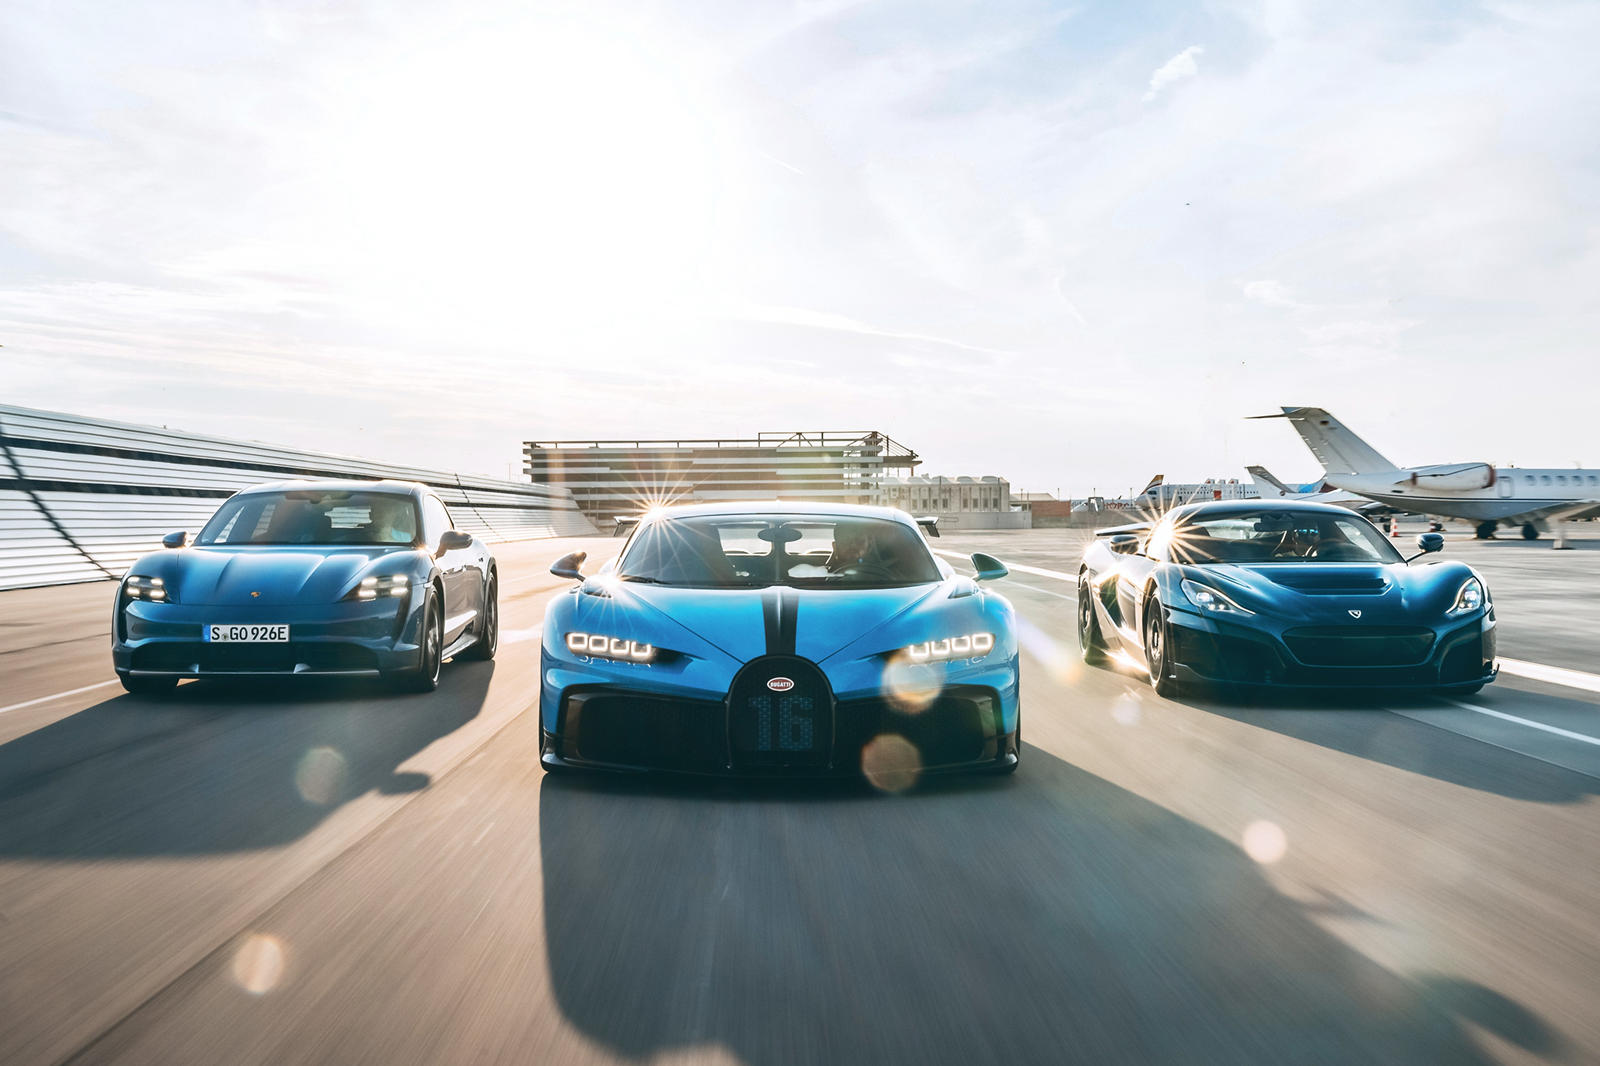 Председатель Porsche Оливер Блум, который также является членом совета директоров Bugatti Rimac, подтвердил, что Chiron пока никуда не денется и что уже есть «идеи для новых автомобилей и разработки еще одного очень уникального продукта». Также велик